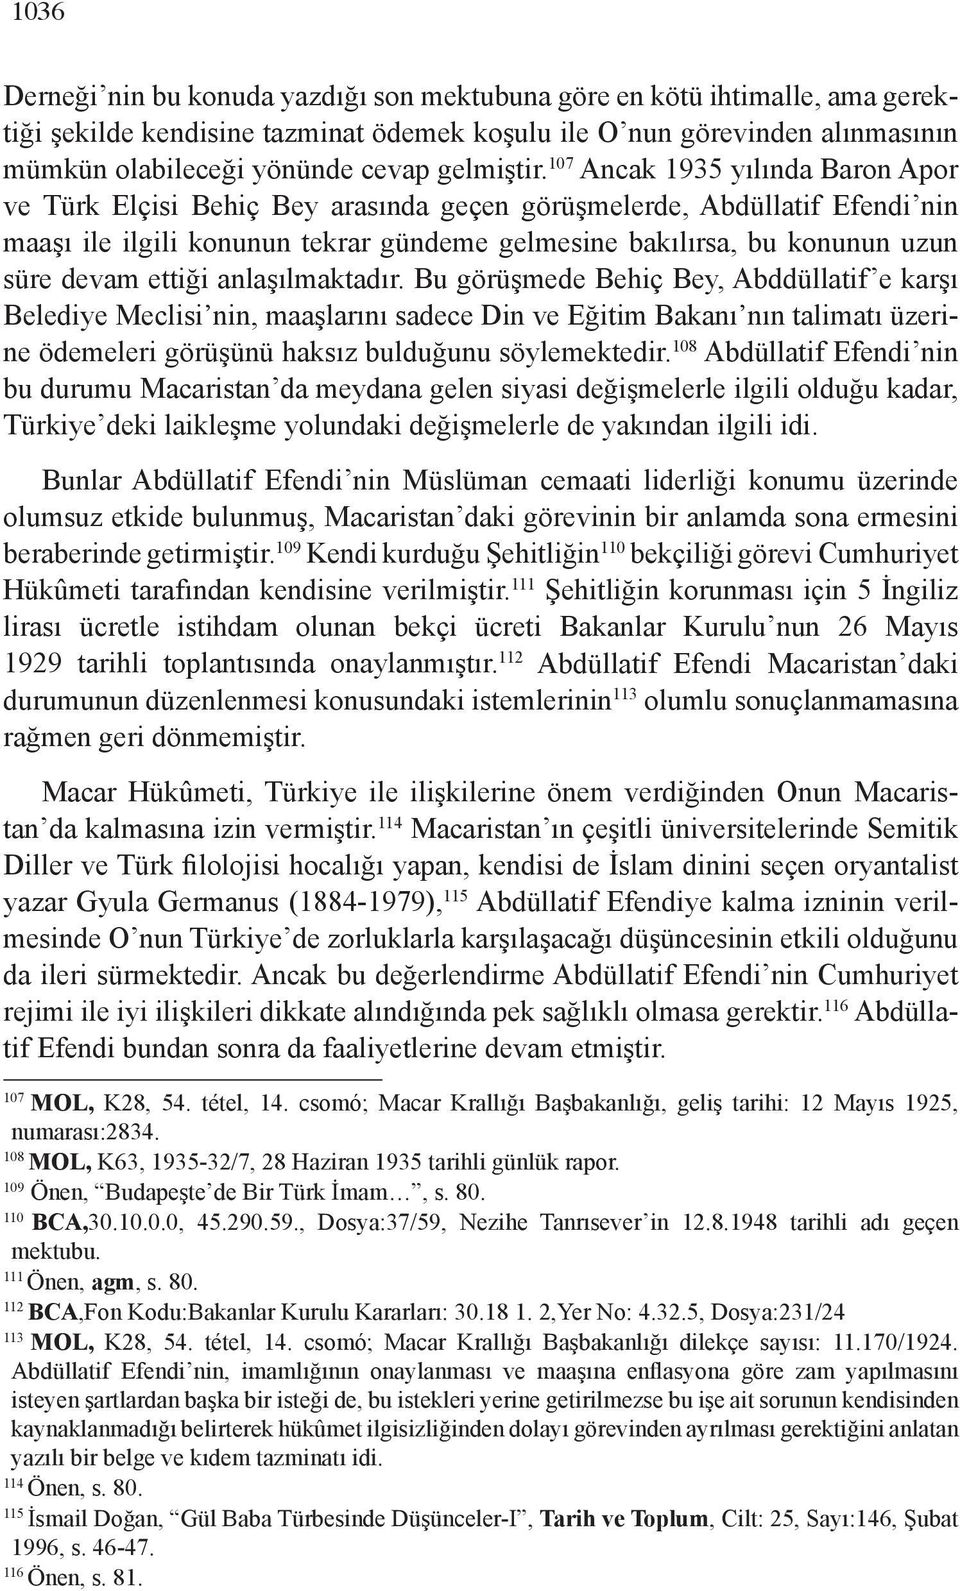 107 Ancak 1935 yılında Baron Apor ve Türk Elçisi Behiç Bey arasında geçen görüşmelerde, Abdüllatif Efendi nin maaşı ile ilgili konunun tekrar gündeme gelmesine bakılırsa, bu konunun uzun süre devam